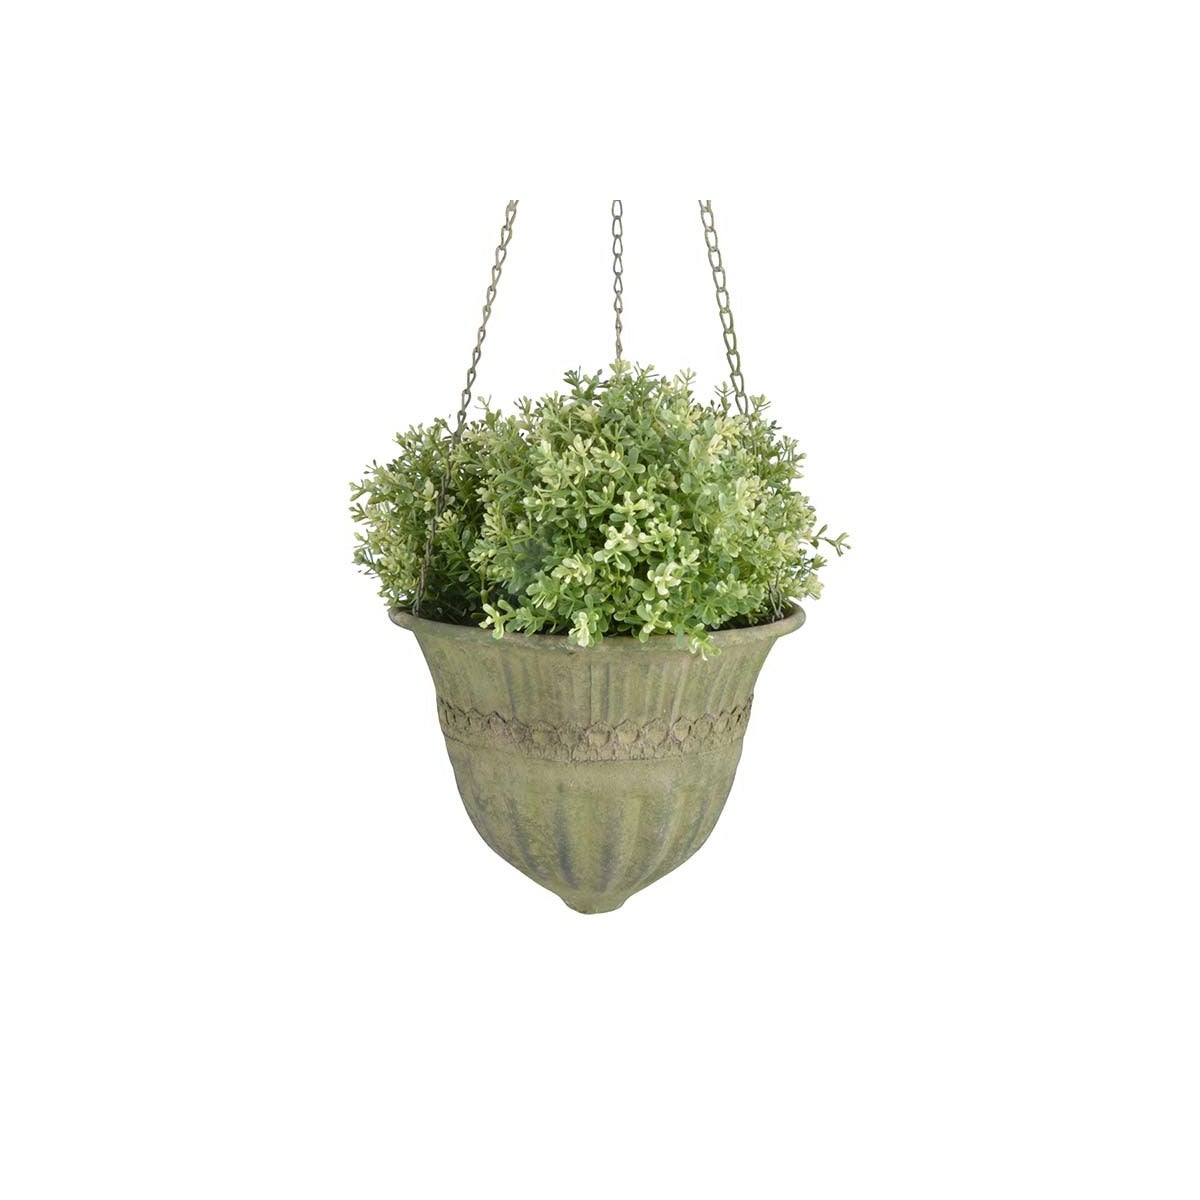 Aged Metal Green Hanging Basket L